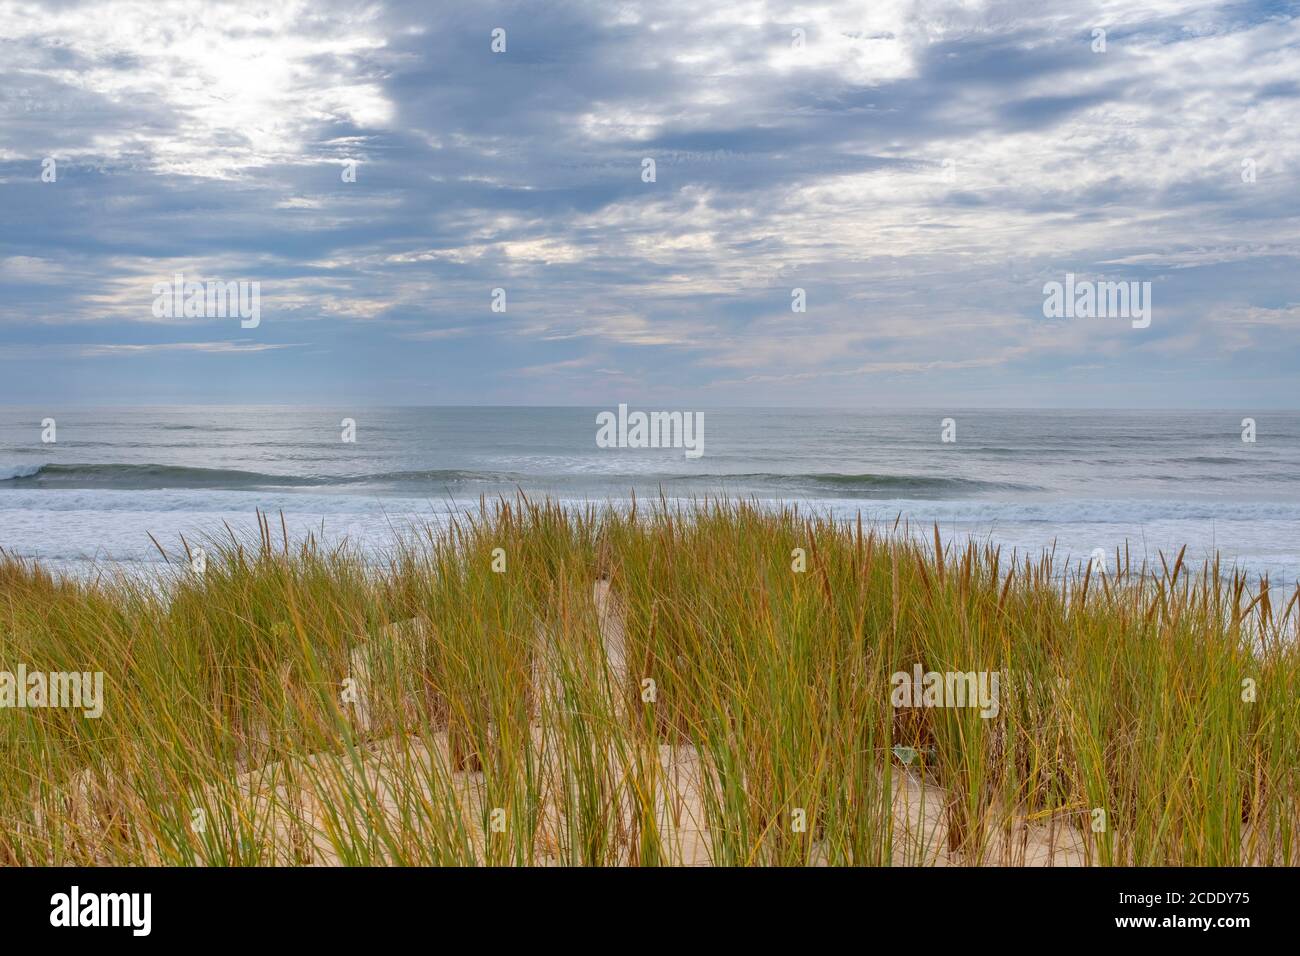 Vagues de l'océan se brisant sur une plage vide sur la côte française. Prise de l'herbe derrière les dunes pendant l'été avec un ciel couvert Banque D'Images